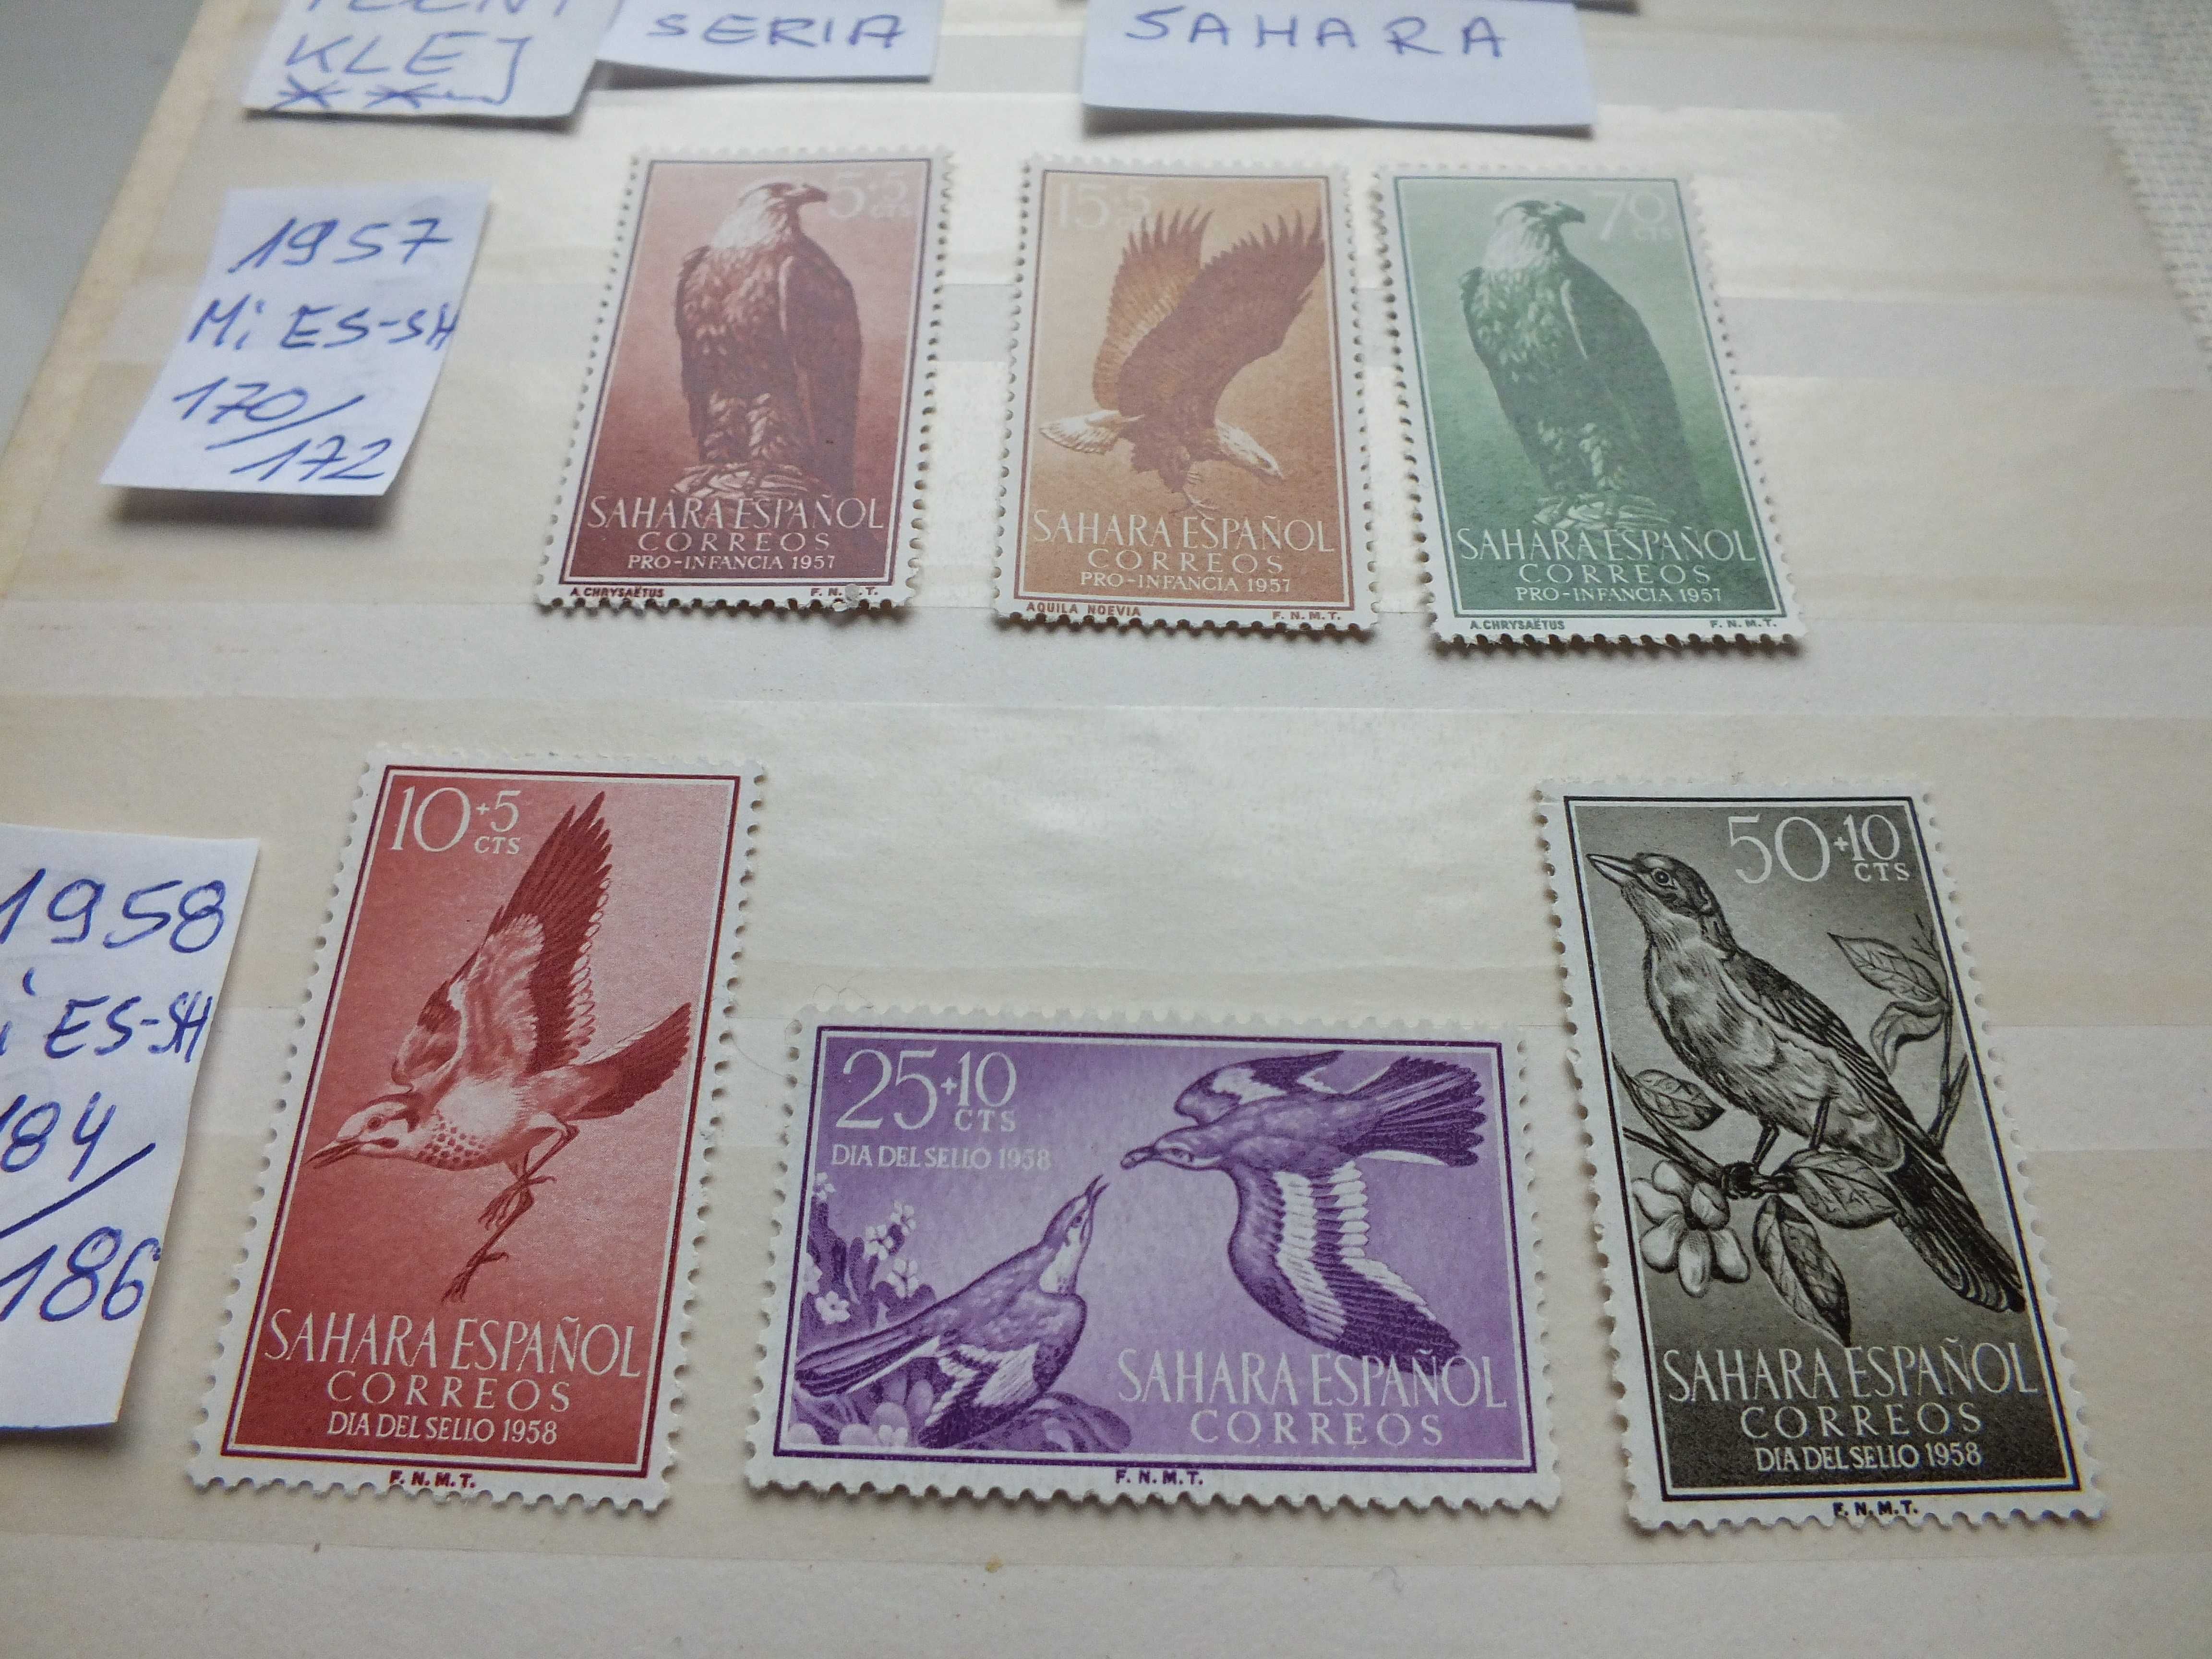 6szt. znaczki pełne serie 1957r. Kolonie Hiszpania SAHARA czyste **